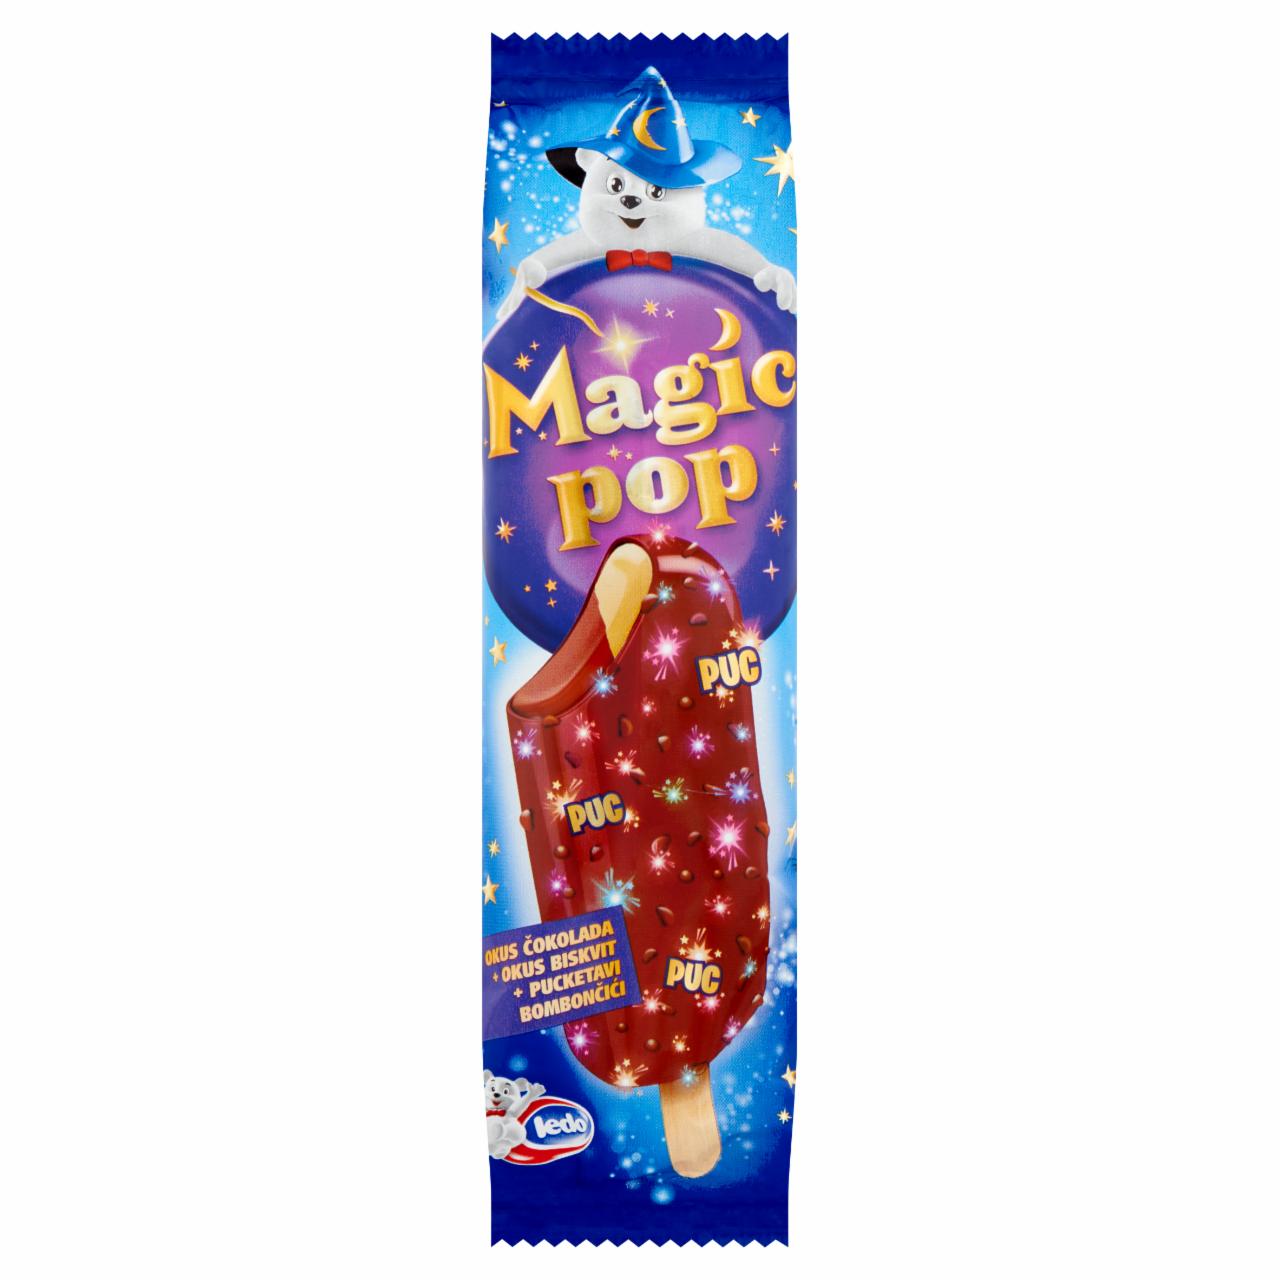 Képek - Ledo Magic Pop piskóta és csokoládé ízű jégkrém robbanó cukorkás csokoládé ízű bevonattal 75 ml